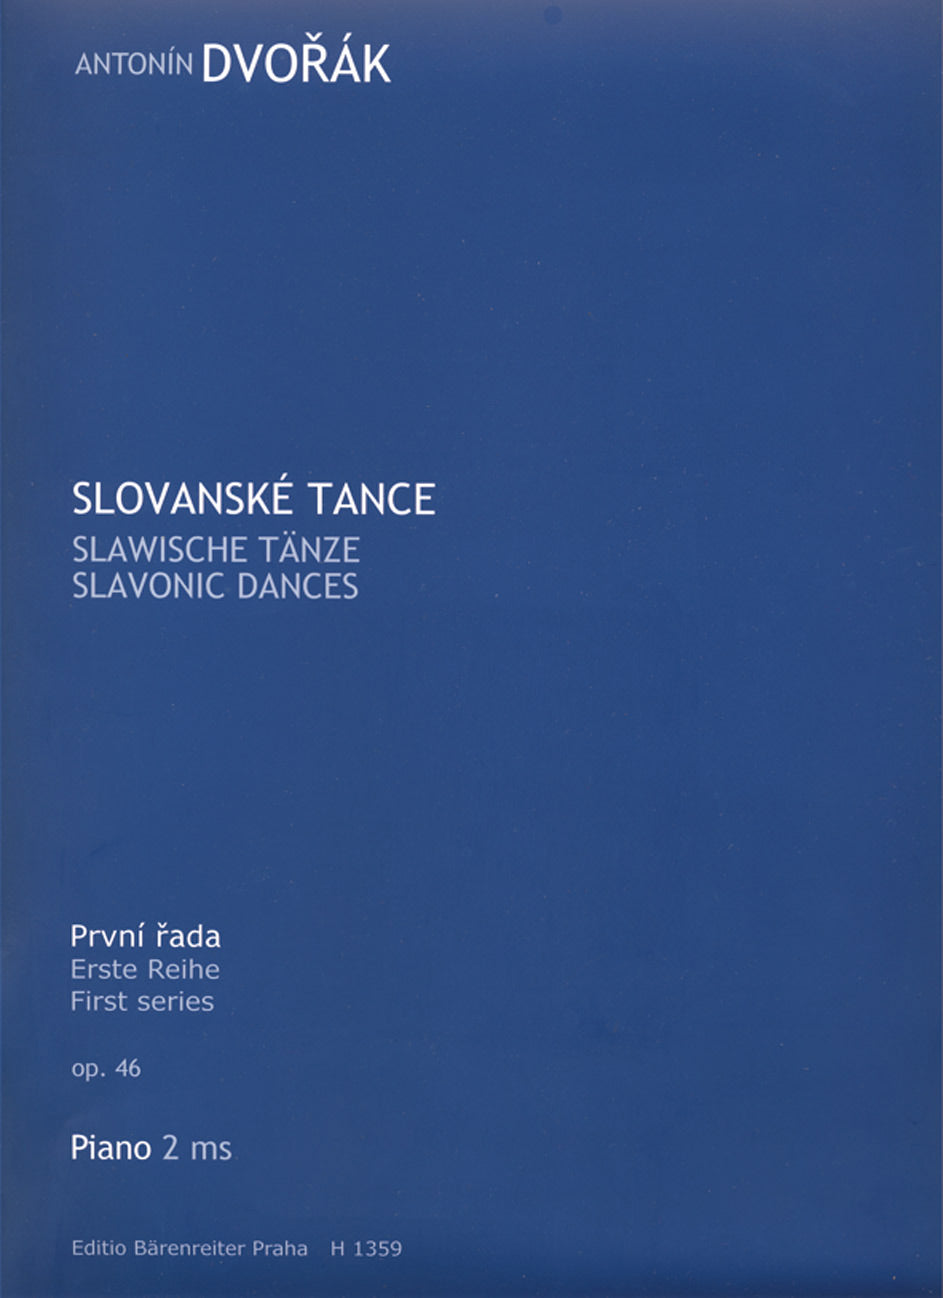 Dvorak Slavonic Dances op. 46 -Series I-